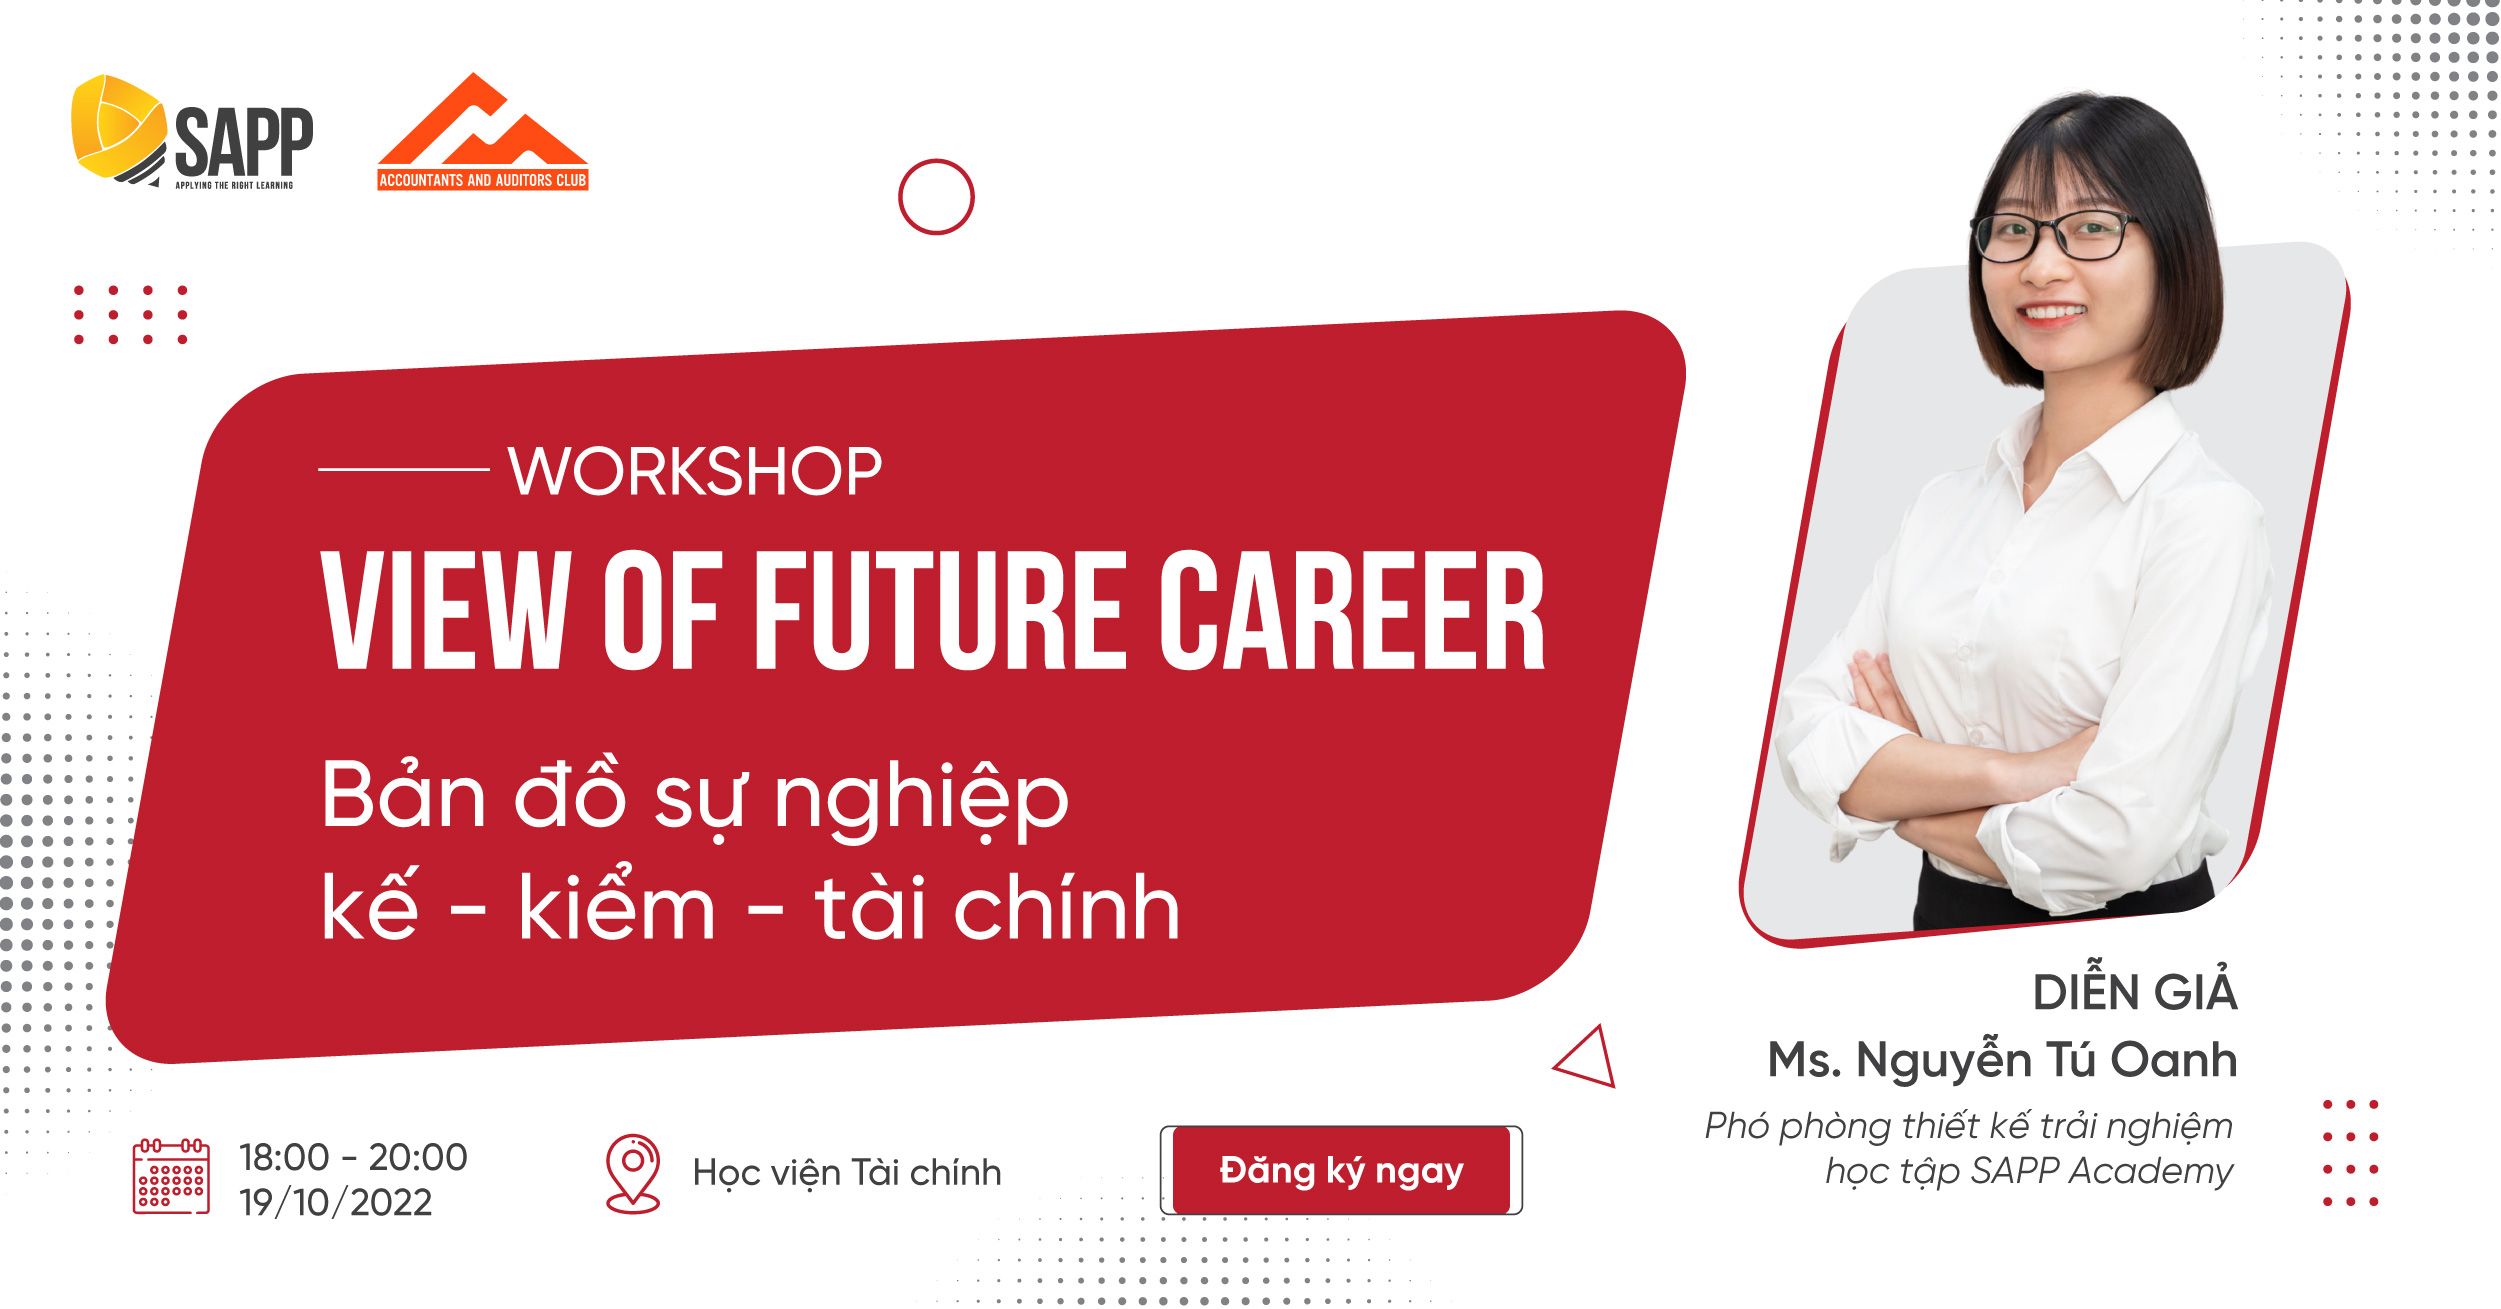 Workshop: View Of Future Career - Bản Đồ Sự Nghiệp Kế - Kiểm - Tài Chính